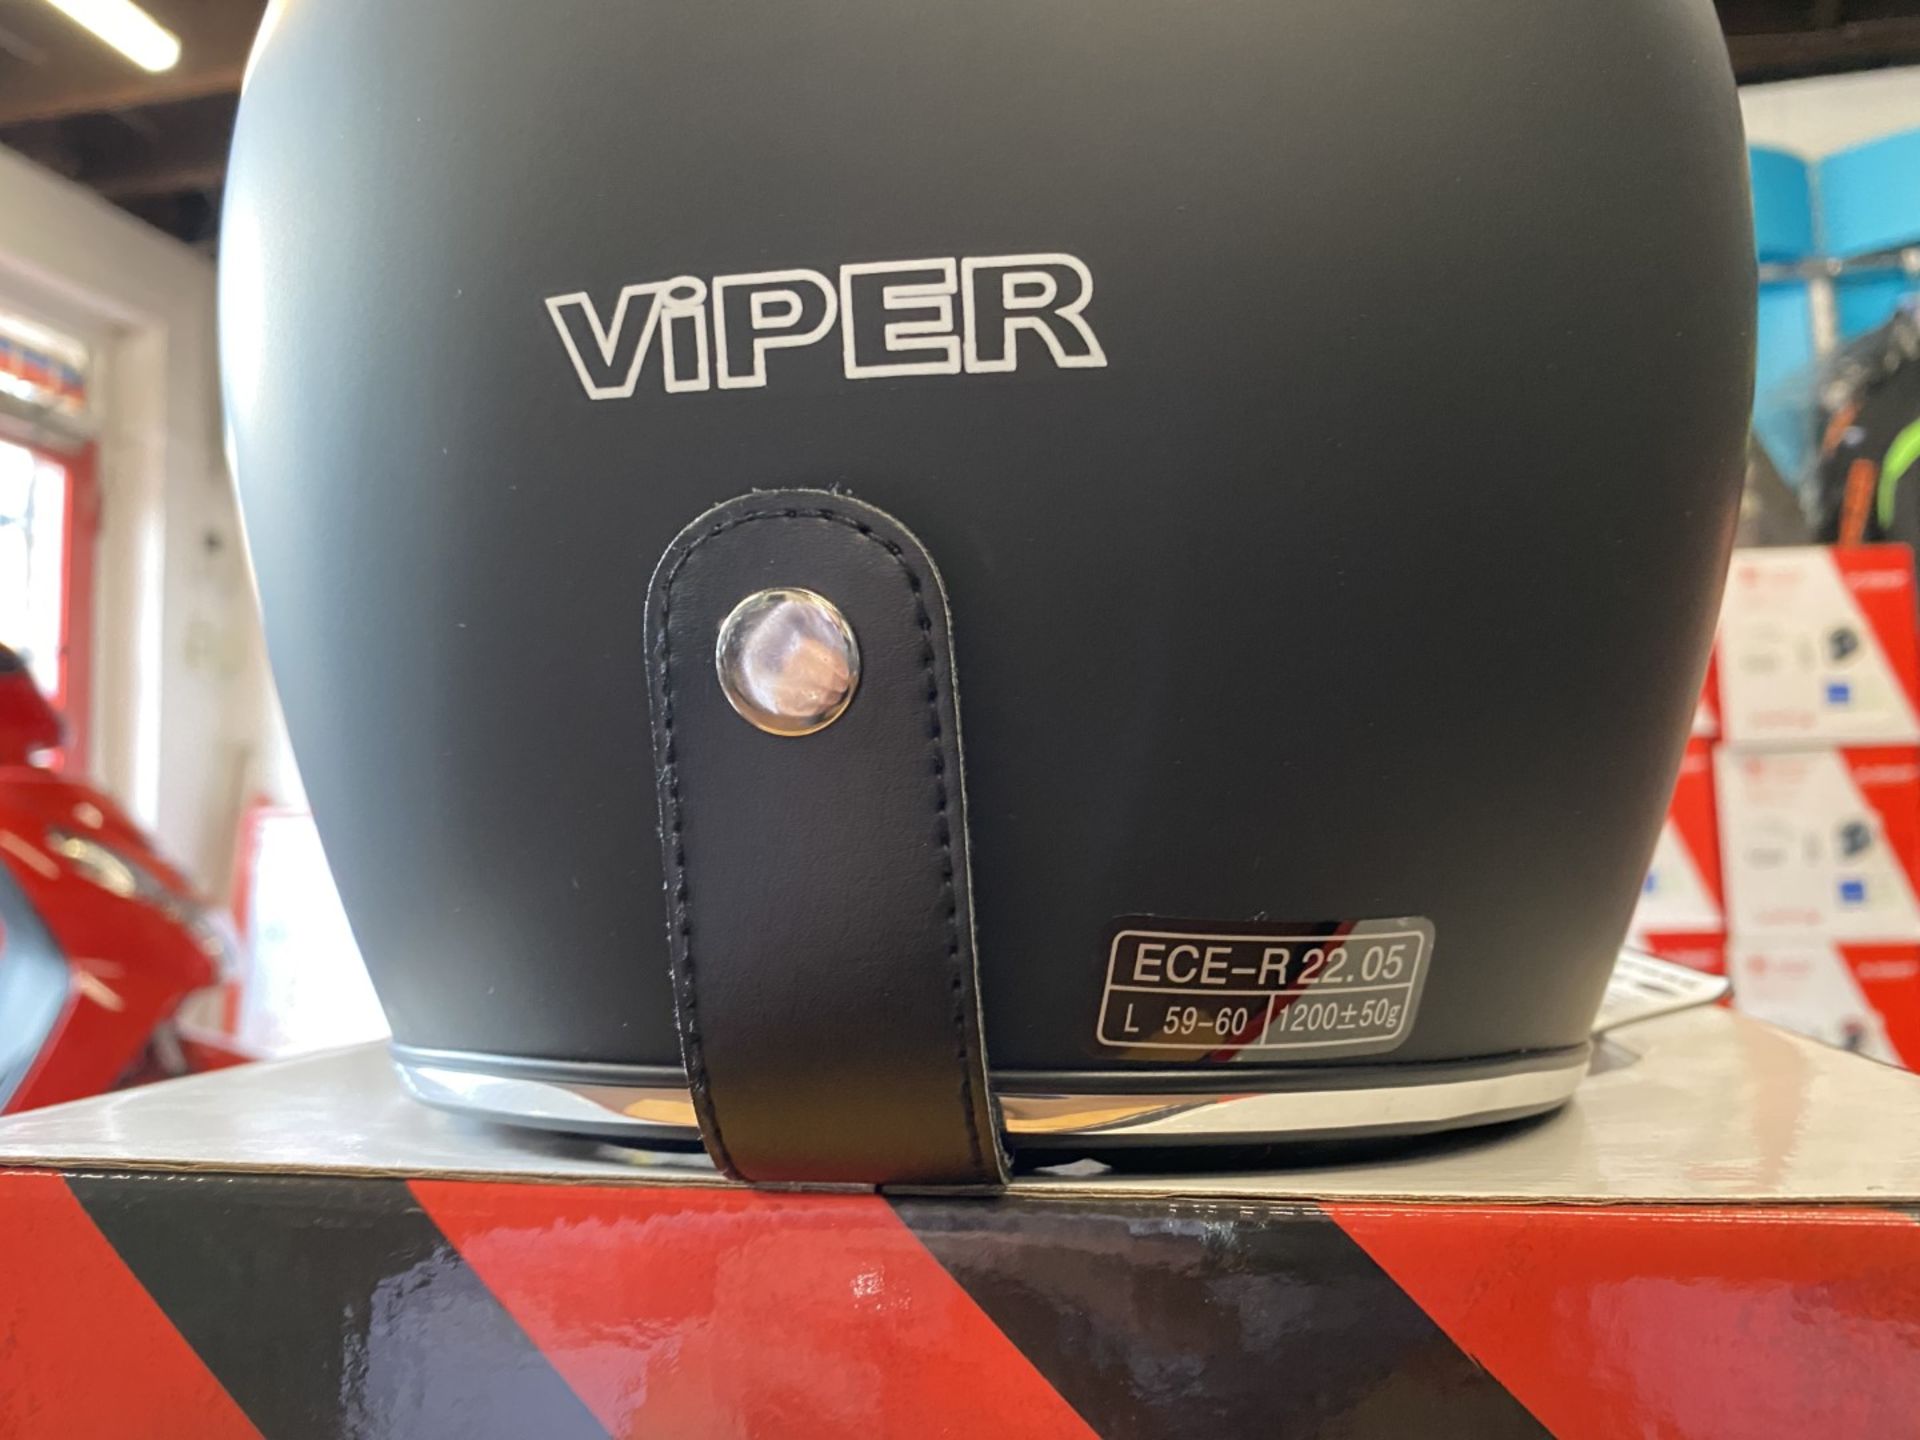 Viper RS-05 Black Matt Large - Viper Helmets - Motorcycle / Motorbike Helmet - RRP £50.00 - Image 3 of 5